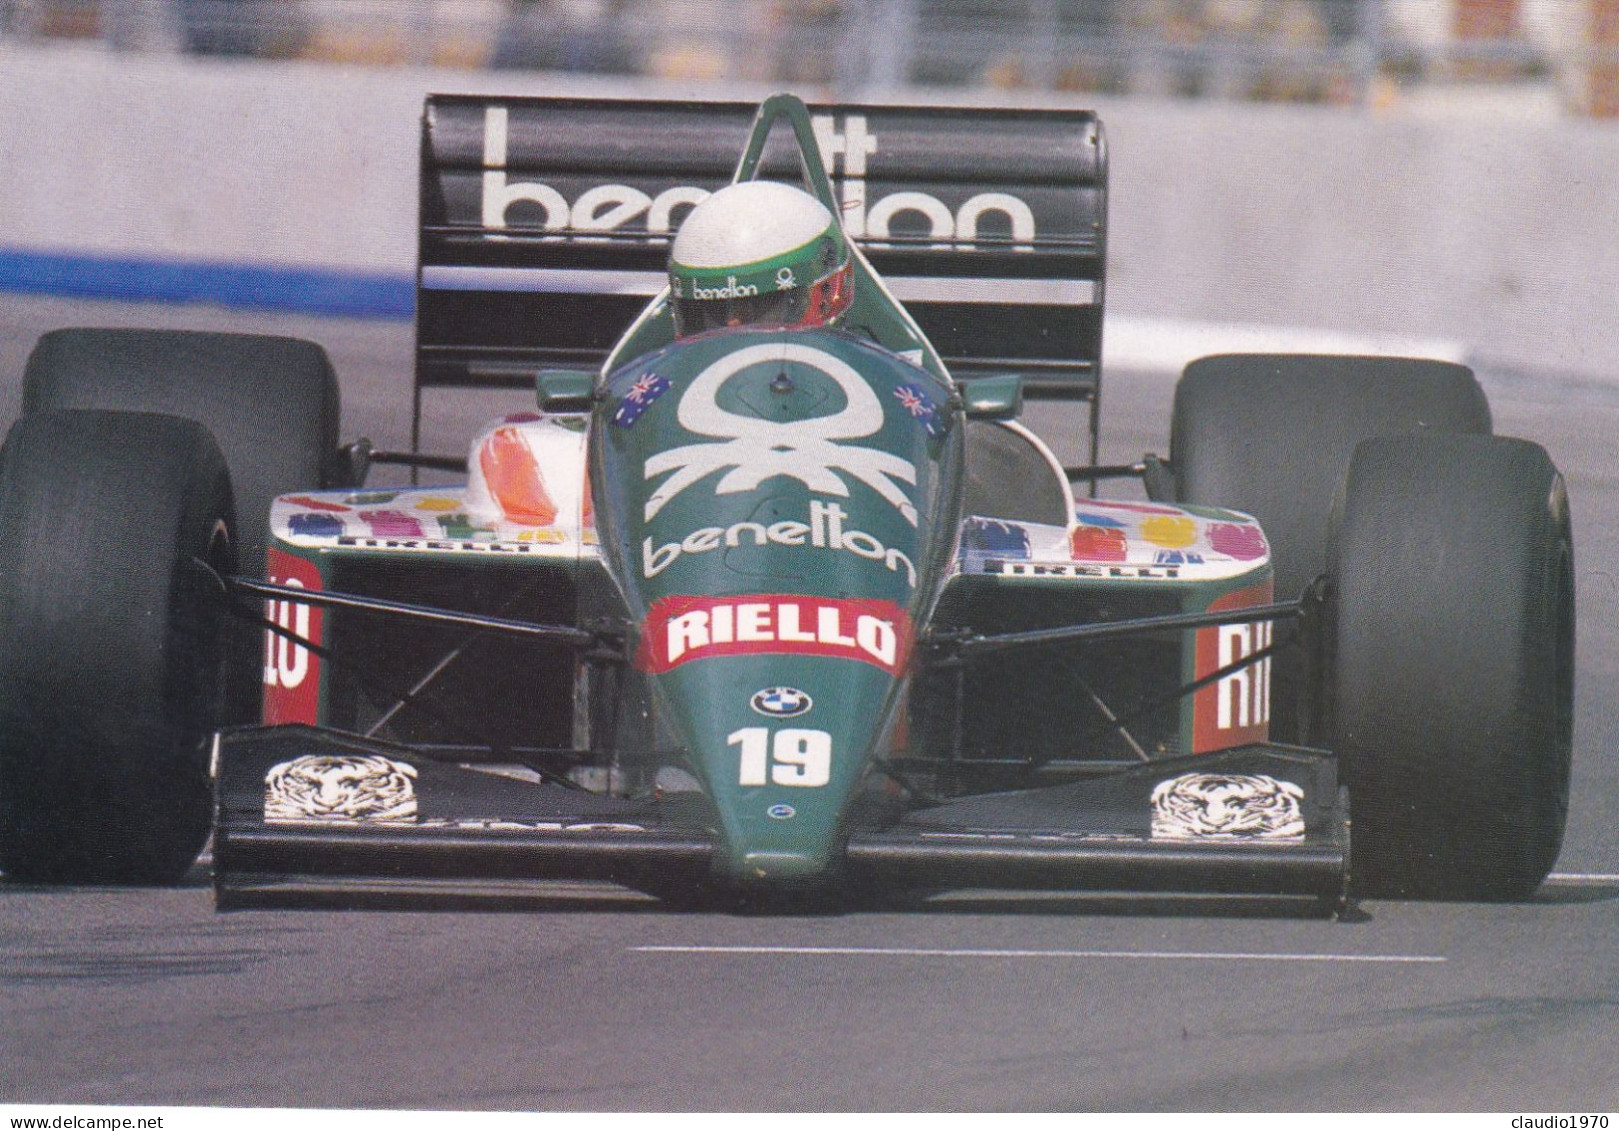 TEMATICA - SPORT  CARTOLINA - F1 WORLD  CHAMPIONSHIP 1987 - RIELLO - Grand Prix / F1